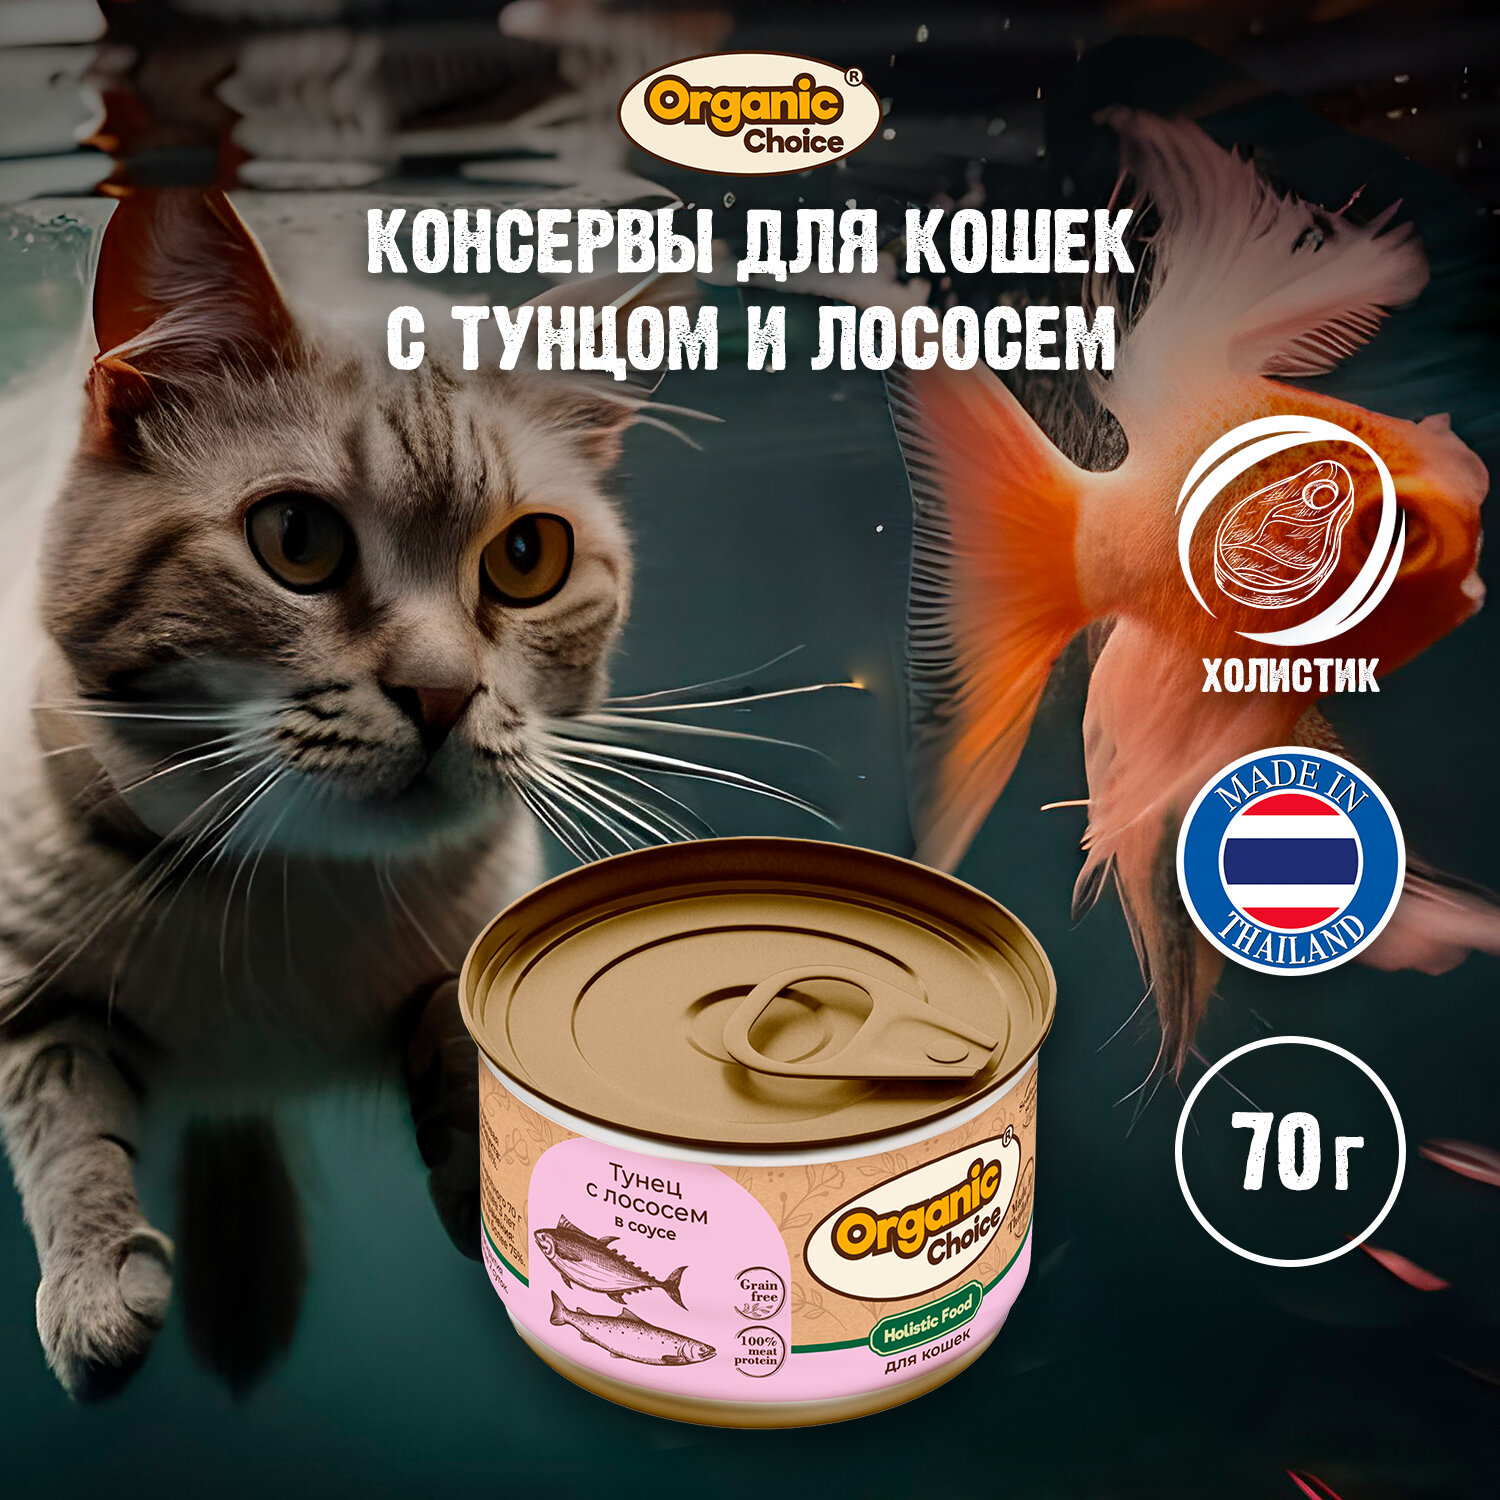 Organic Сhoice Grain Free 70 г консервы тунец с лососем в соусе для кошек